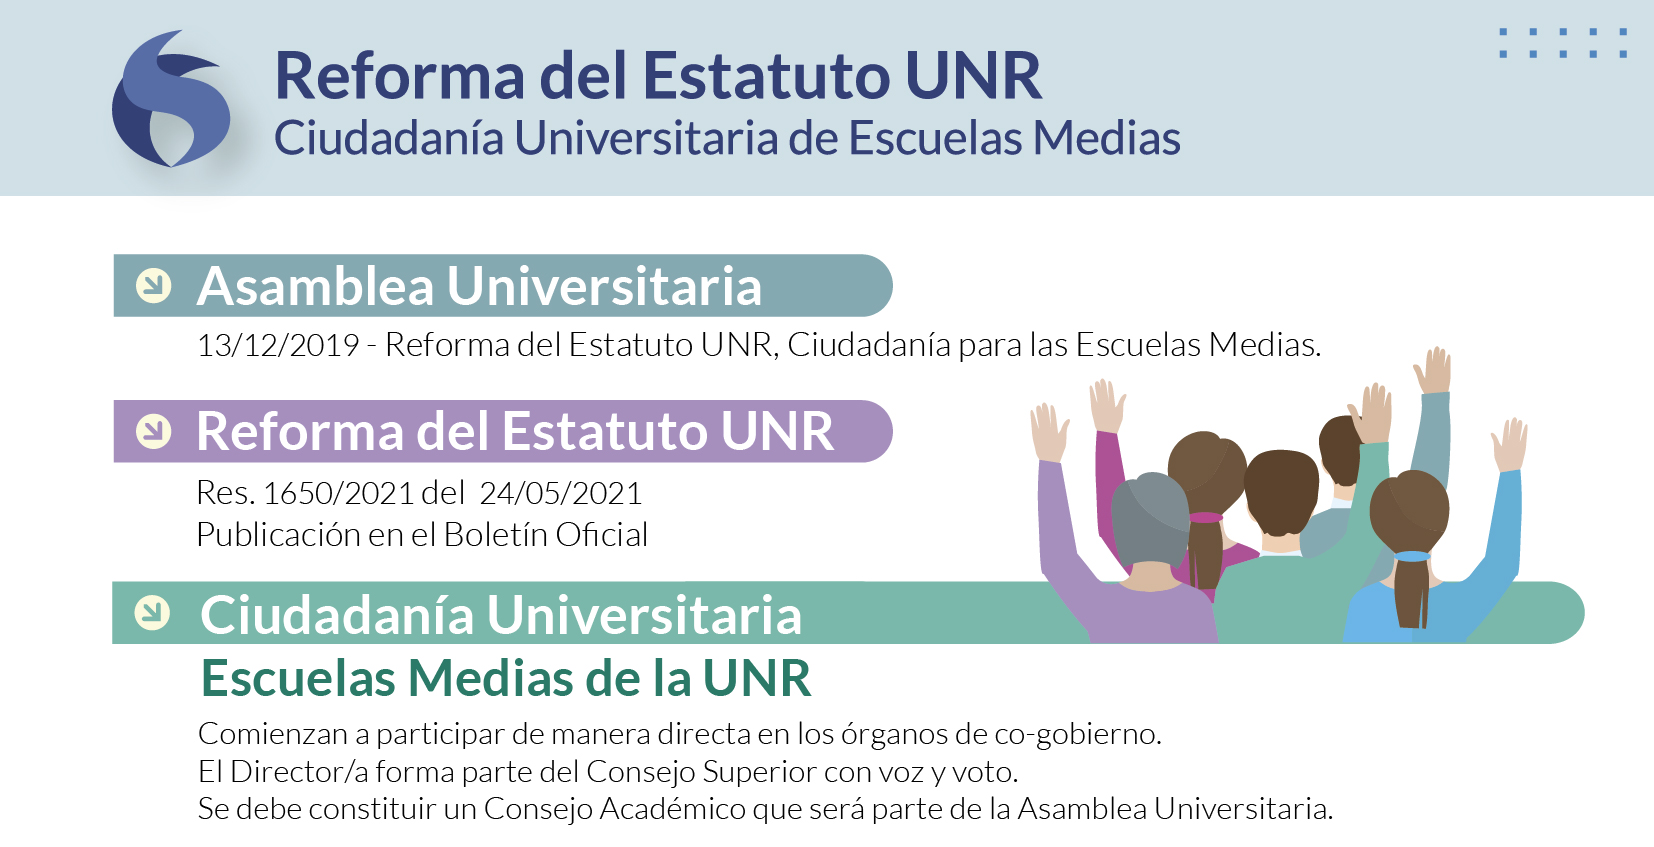 Reforma del Estatuto UNR - Ciudadanía Universitaria de Escuelas Medias